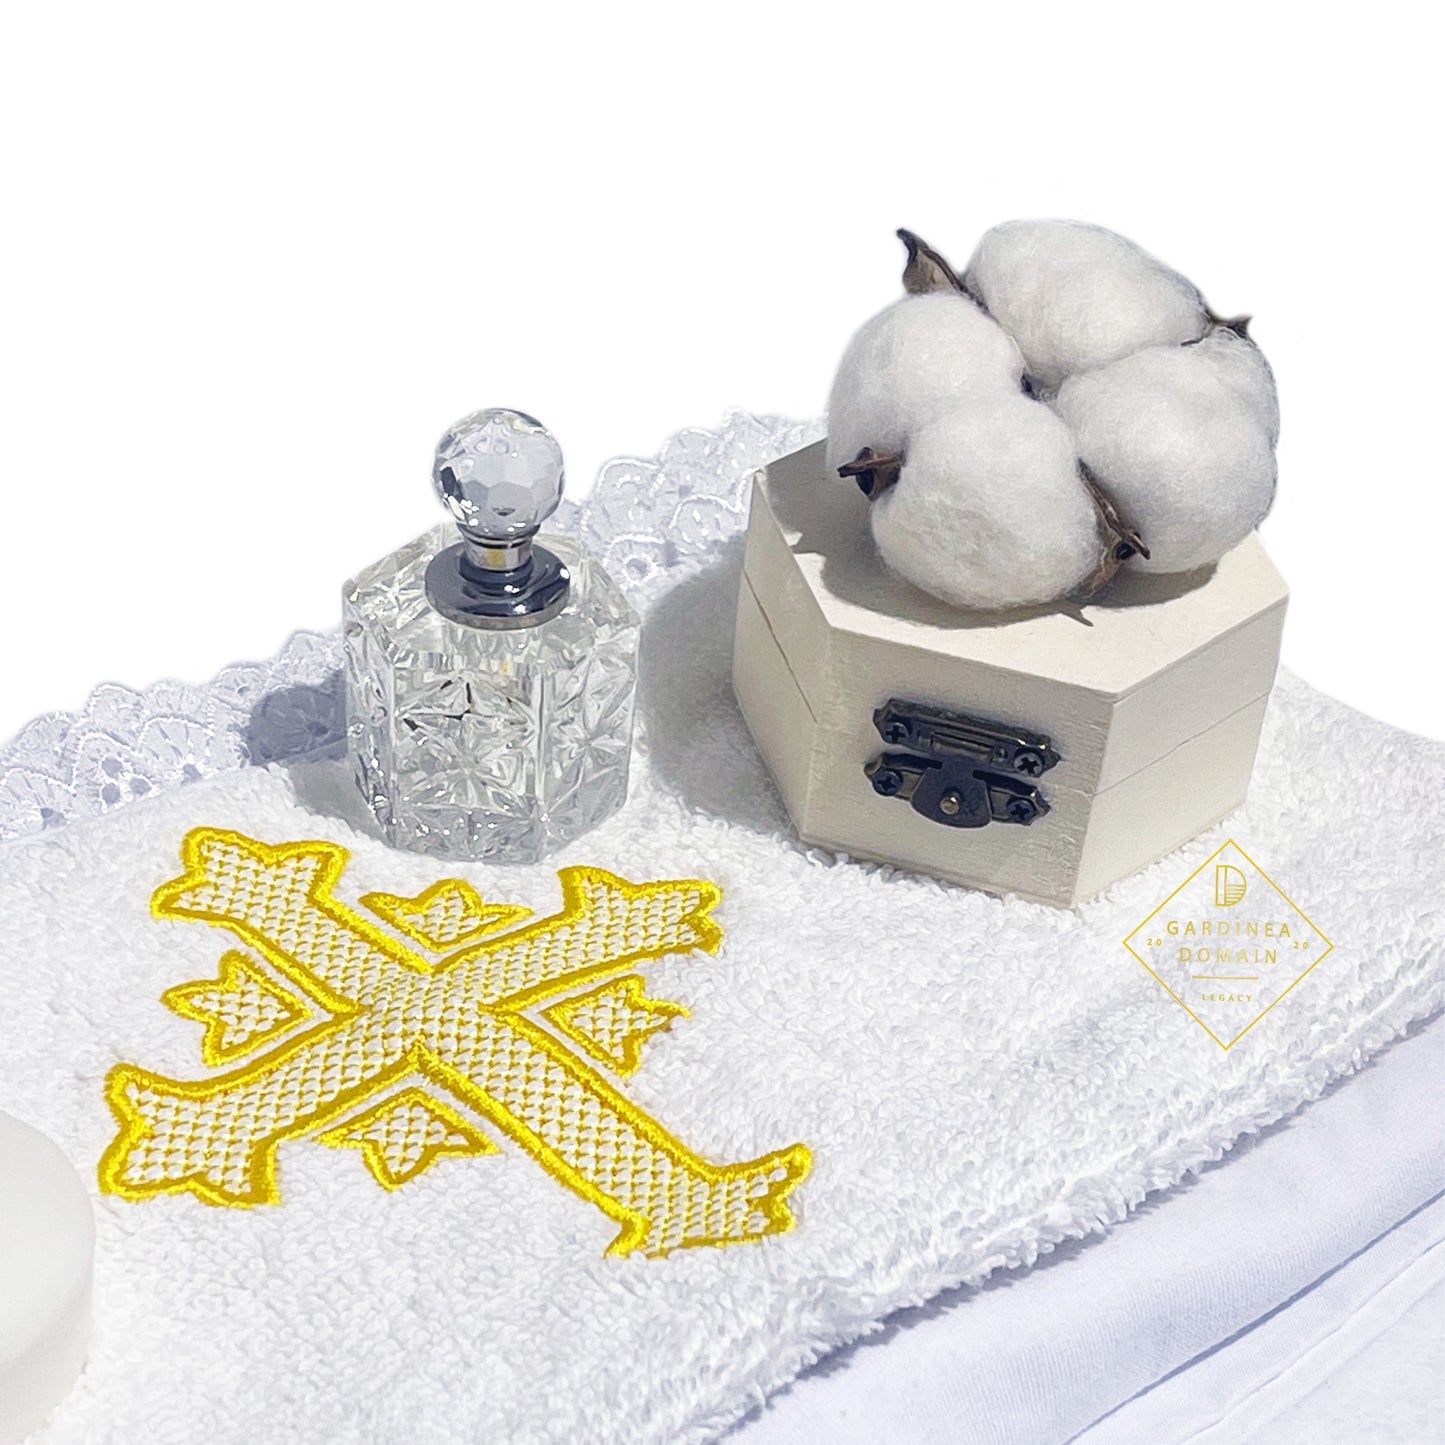 Trusou elegant botez Gardinea Domain® 10 piese, cutie trusou din catifea alb ivoire si capac personalizat brodat cu mesajul "Azi m-am botezat!", decor dantela